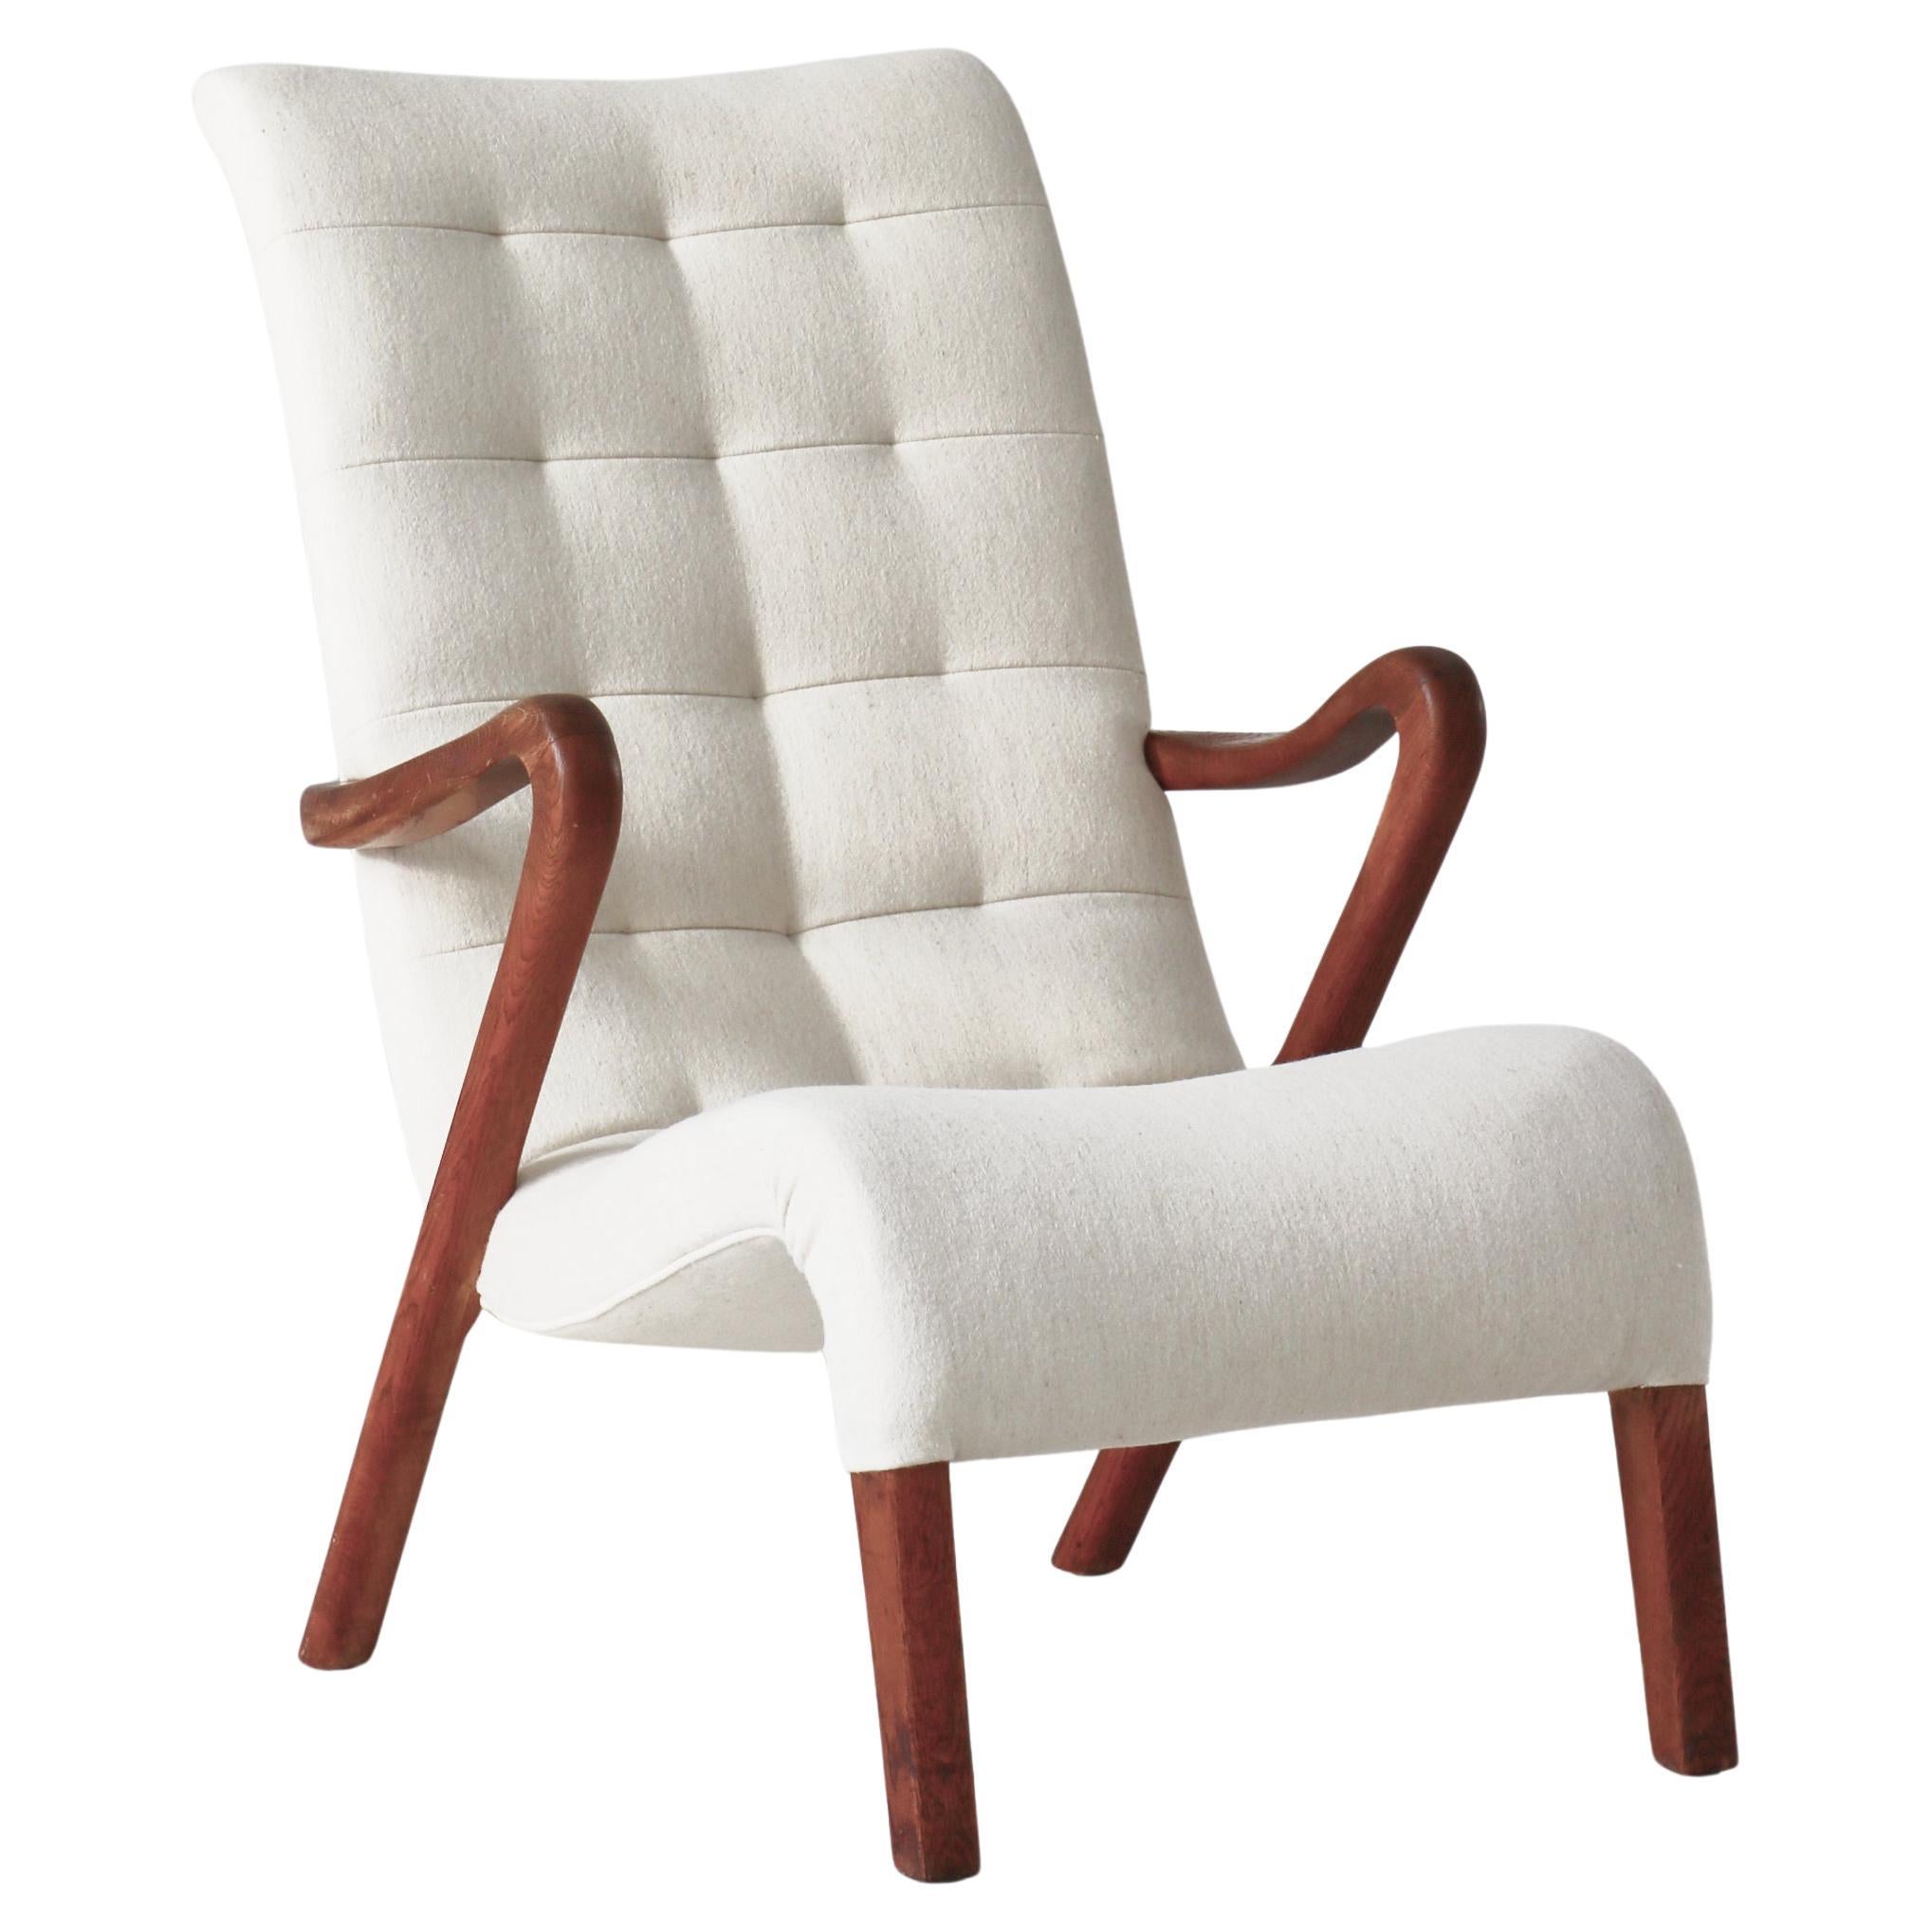 Danish Modern Lounge Chair "Model No.56" by Slagelse Møbelværk, 1940s